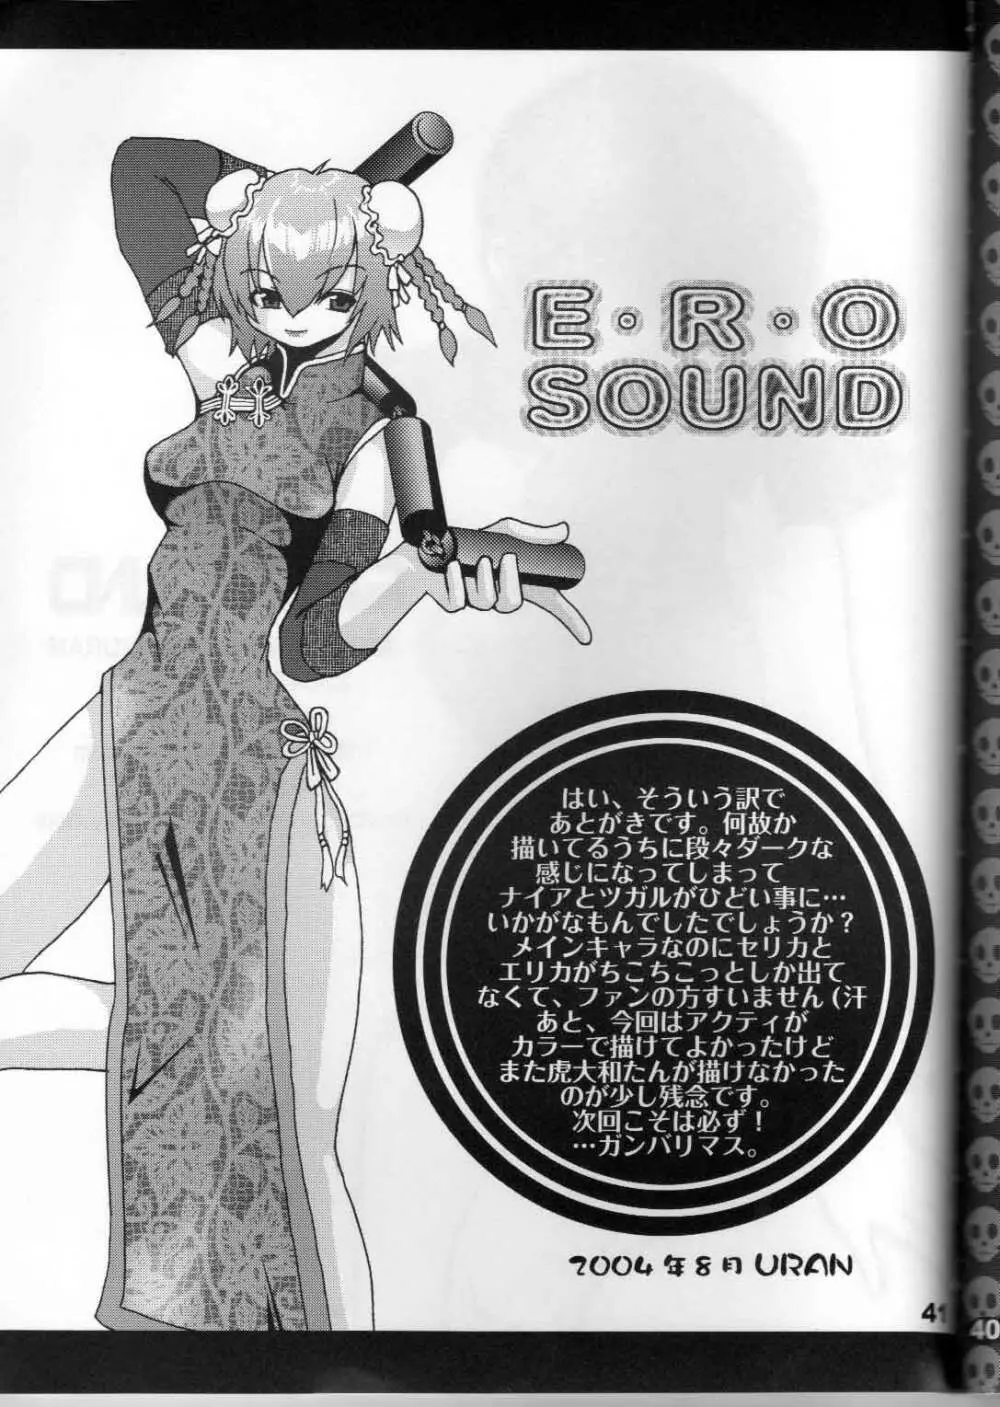 Ero Sound - page42